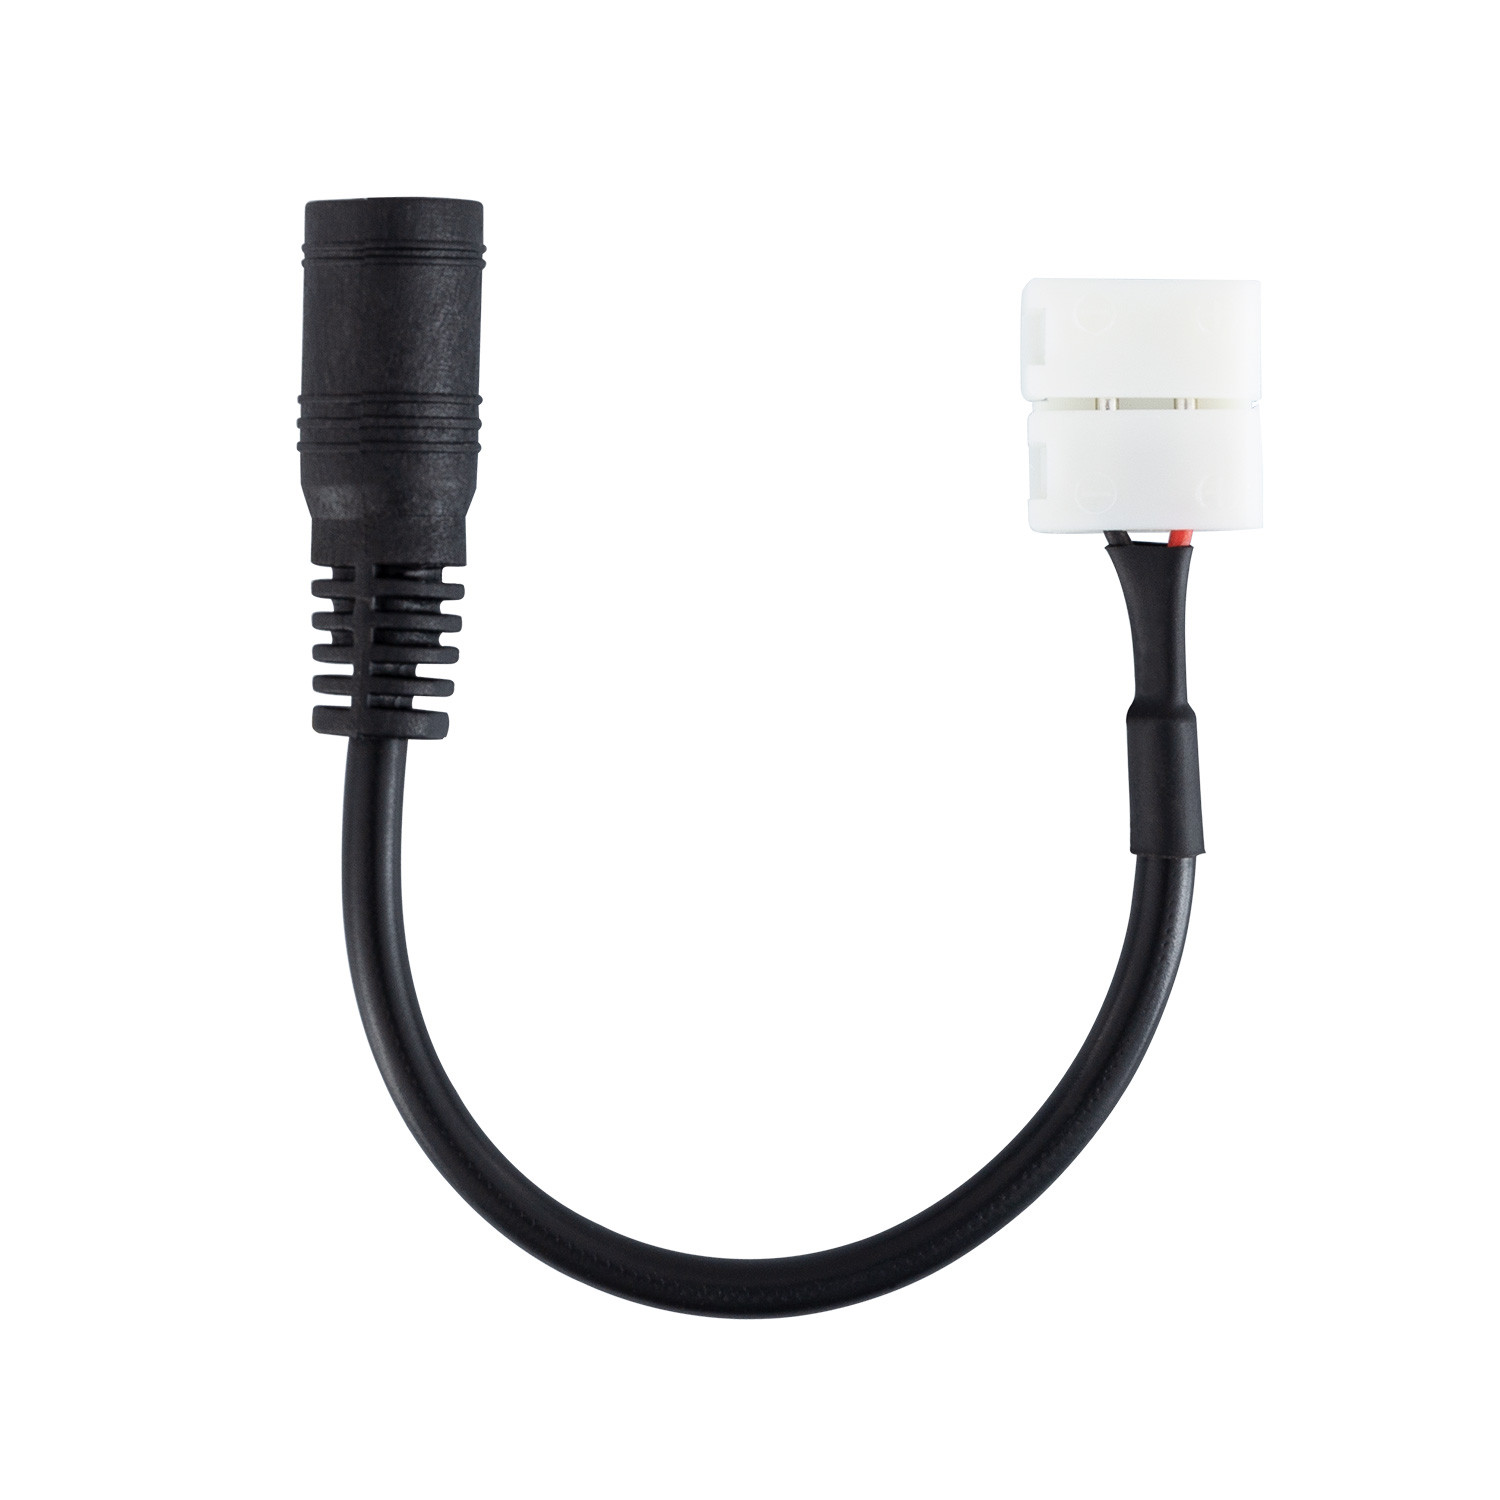 Connexion rapide ruban LED 2 pôles IP20 - Câble 8mm - ®